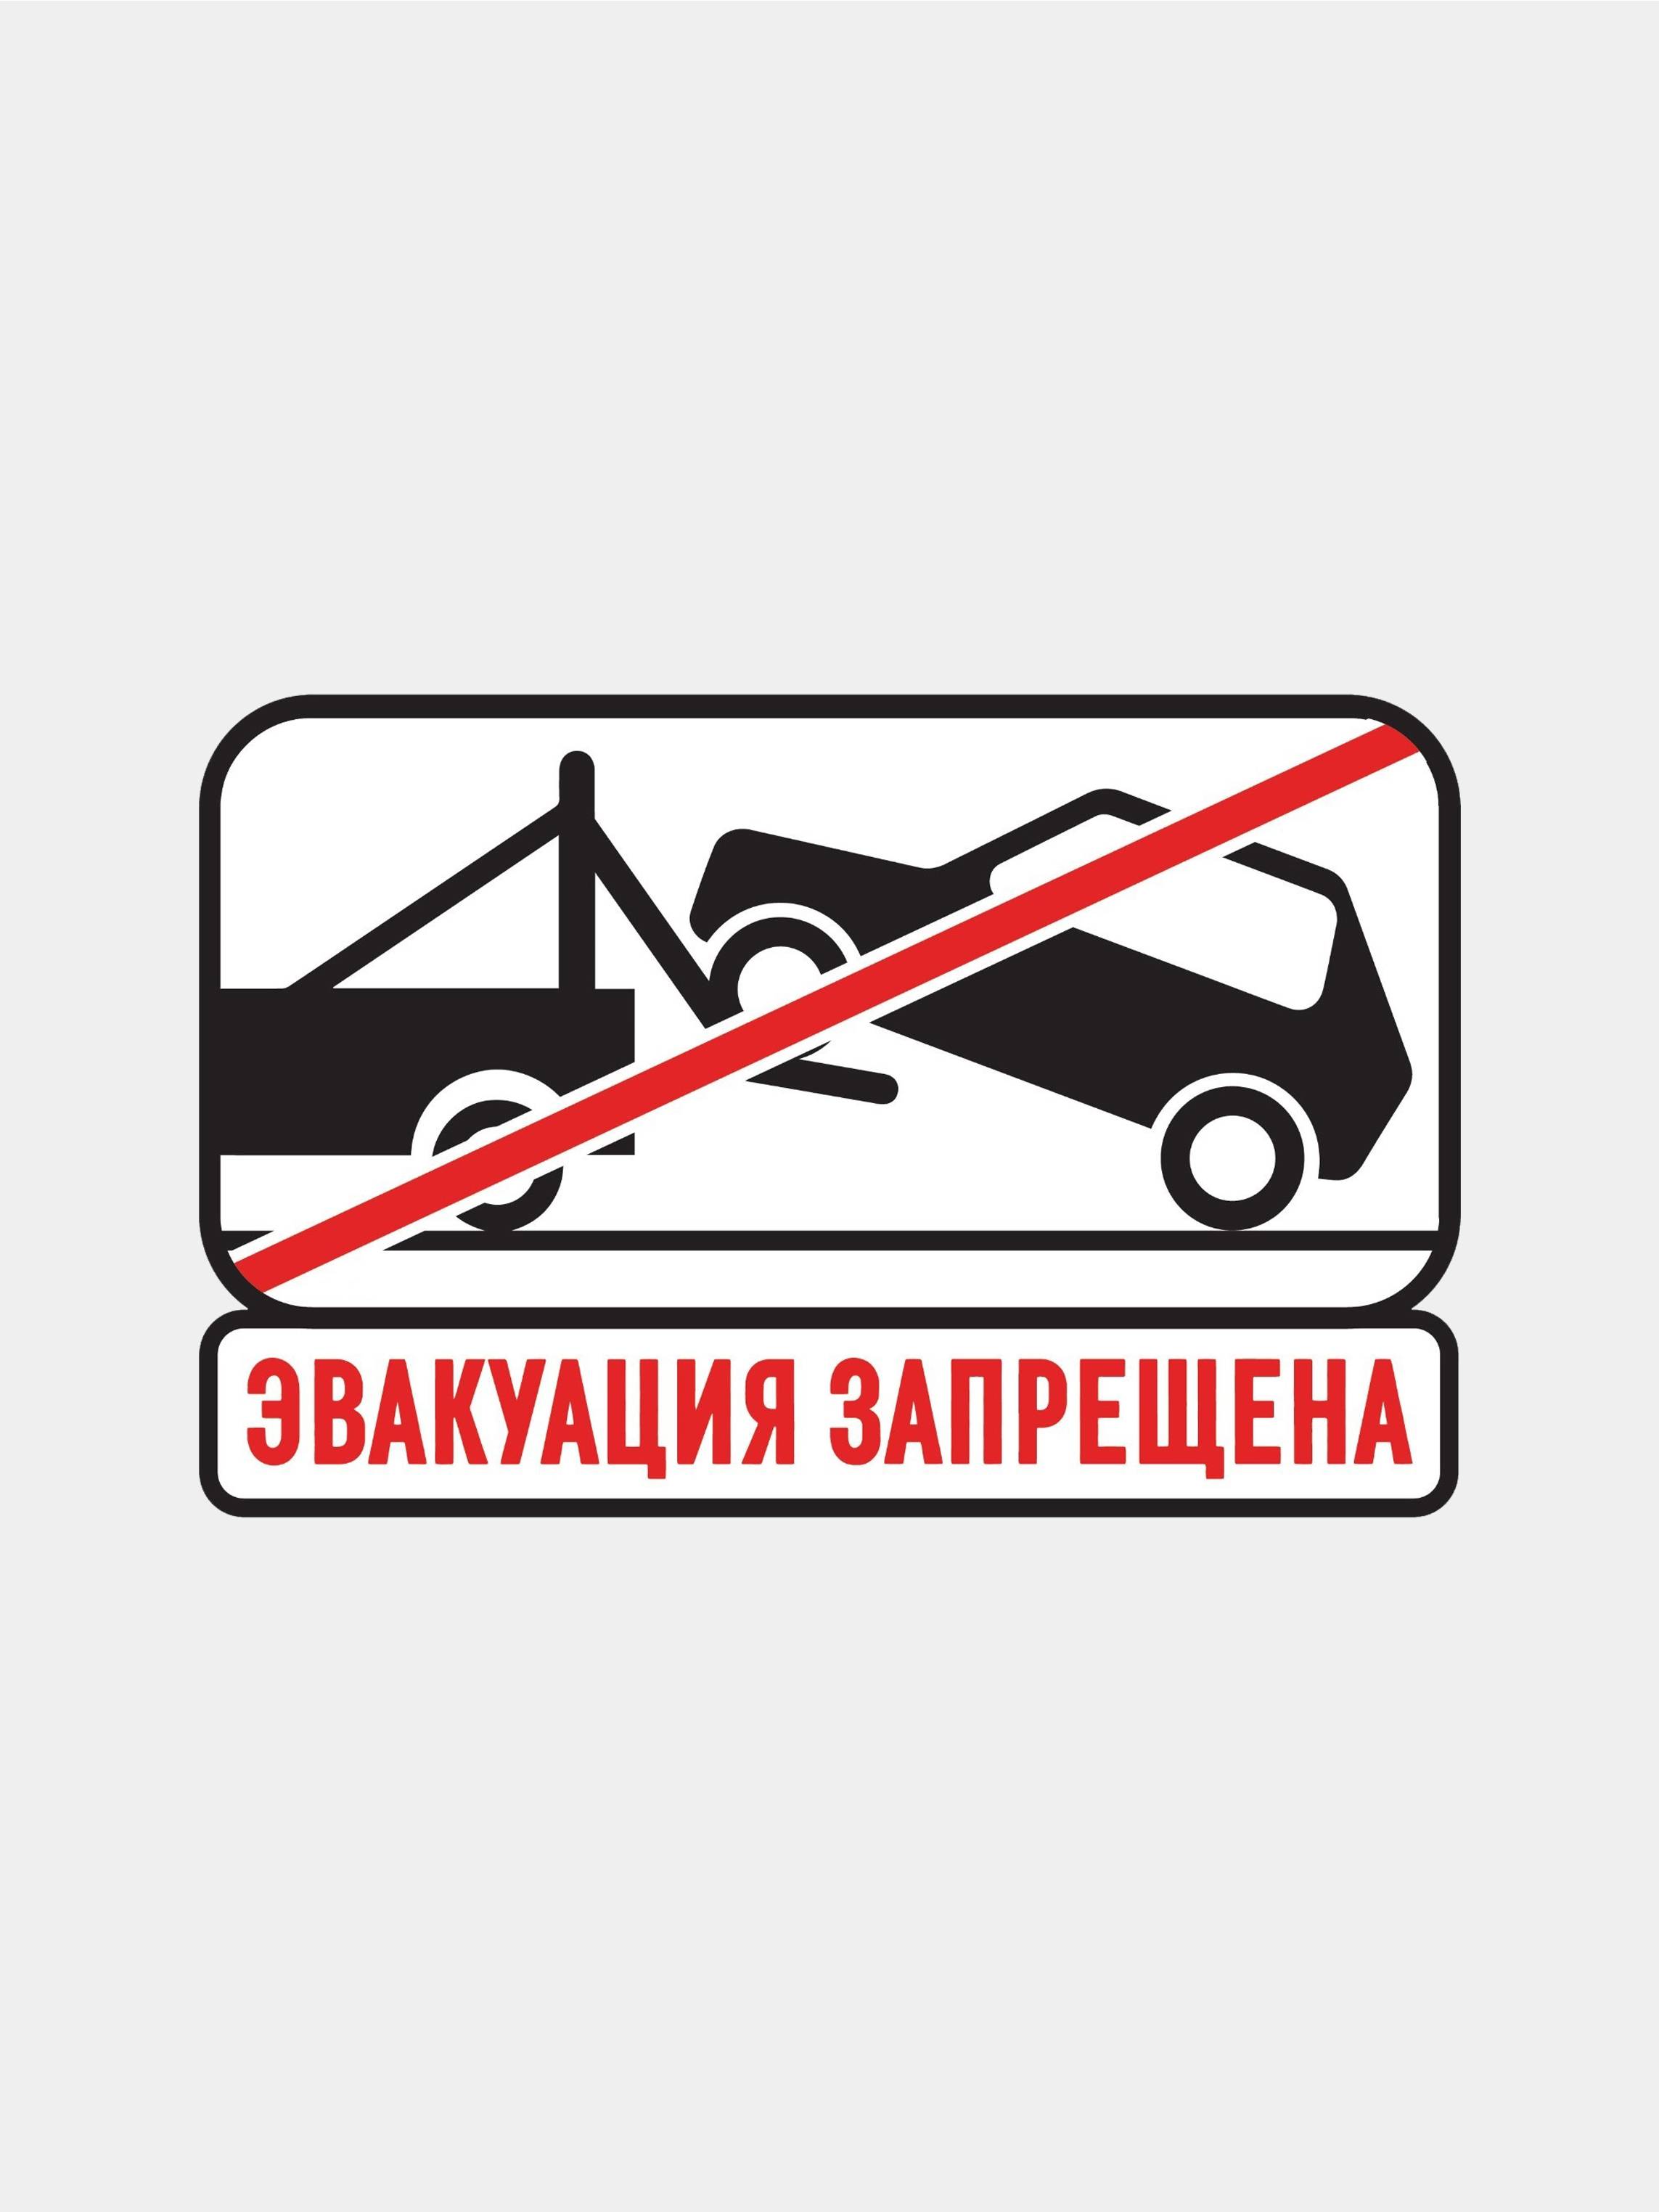 Купить автомобиль с запретом